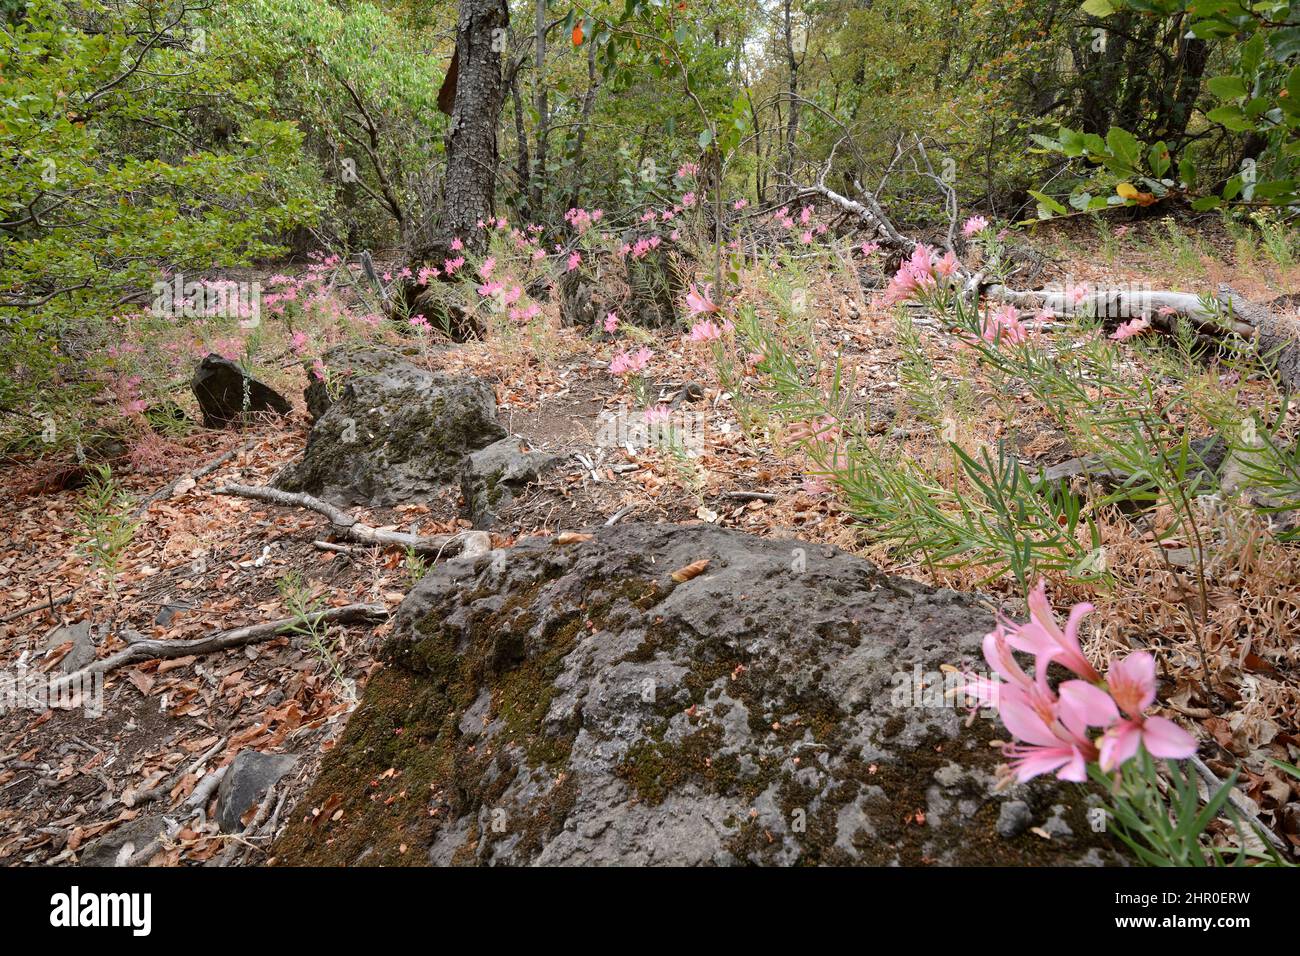 Parrotlily (Alstroemeria presliana) en el subcrecimiento de Nothofagus, Parque Nacional Radal Siete Tazas, VII Región del Maule, Chile Foto de stock